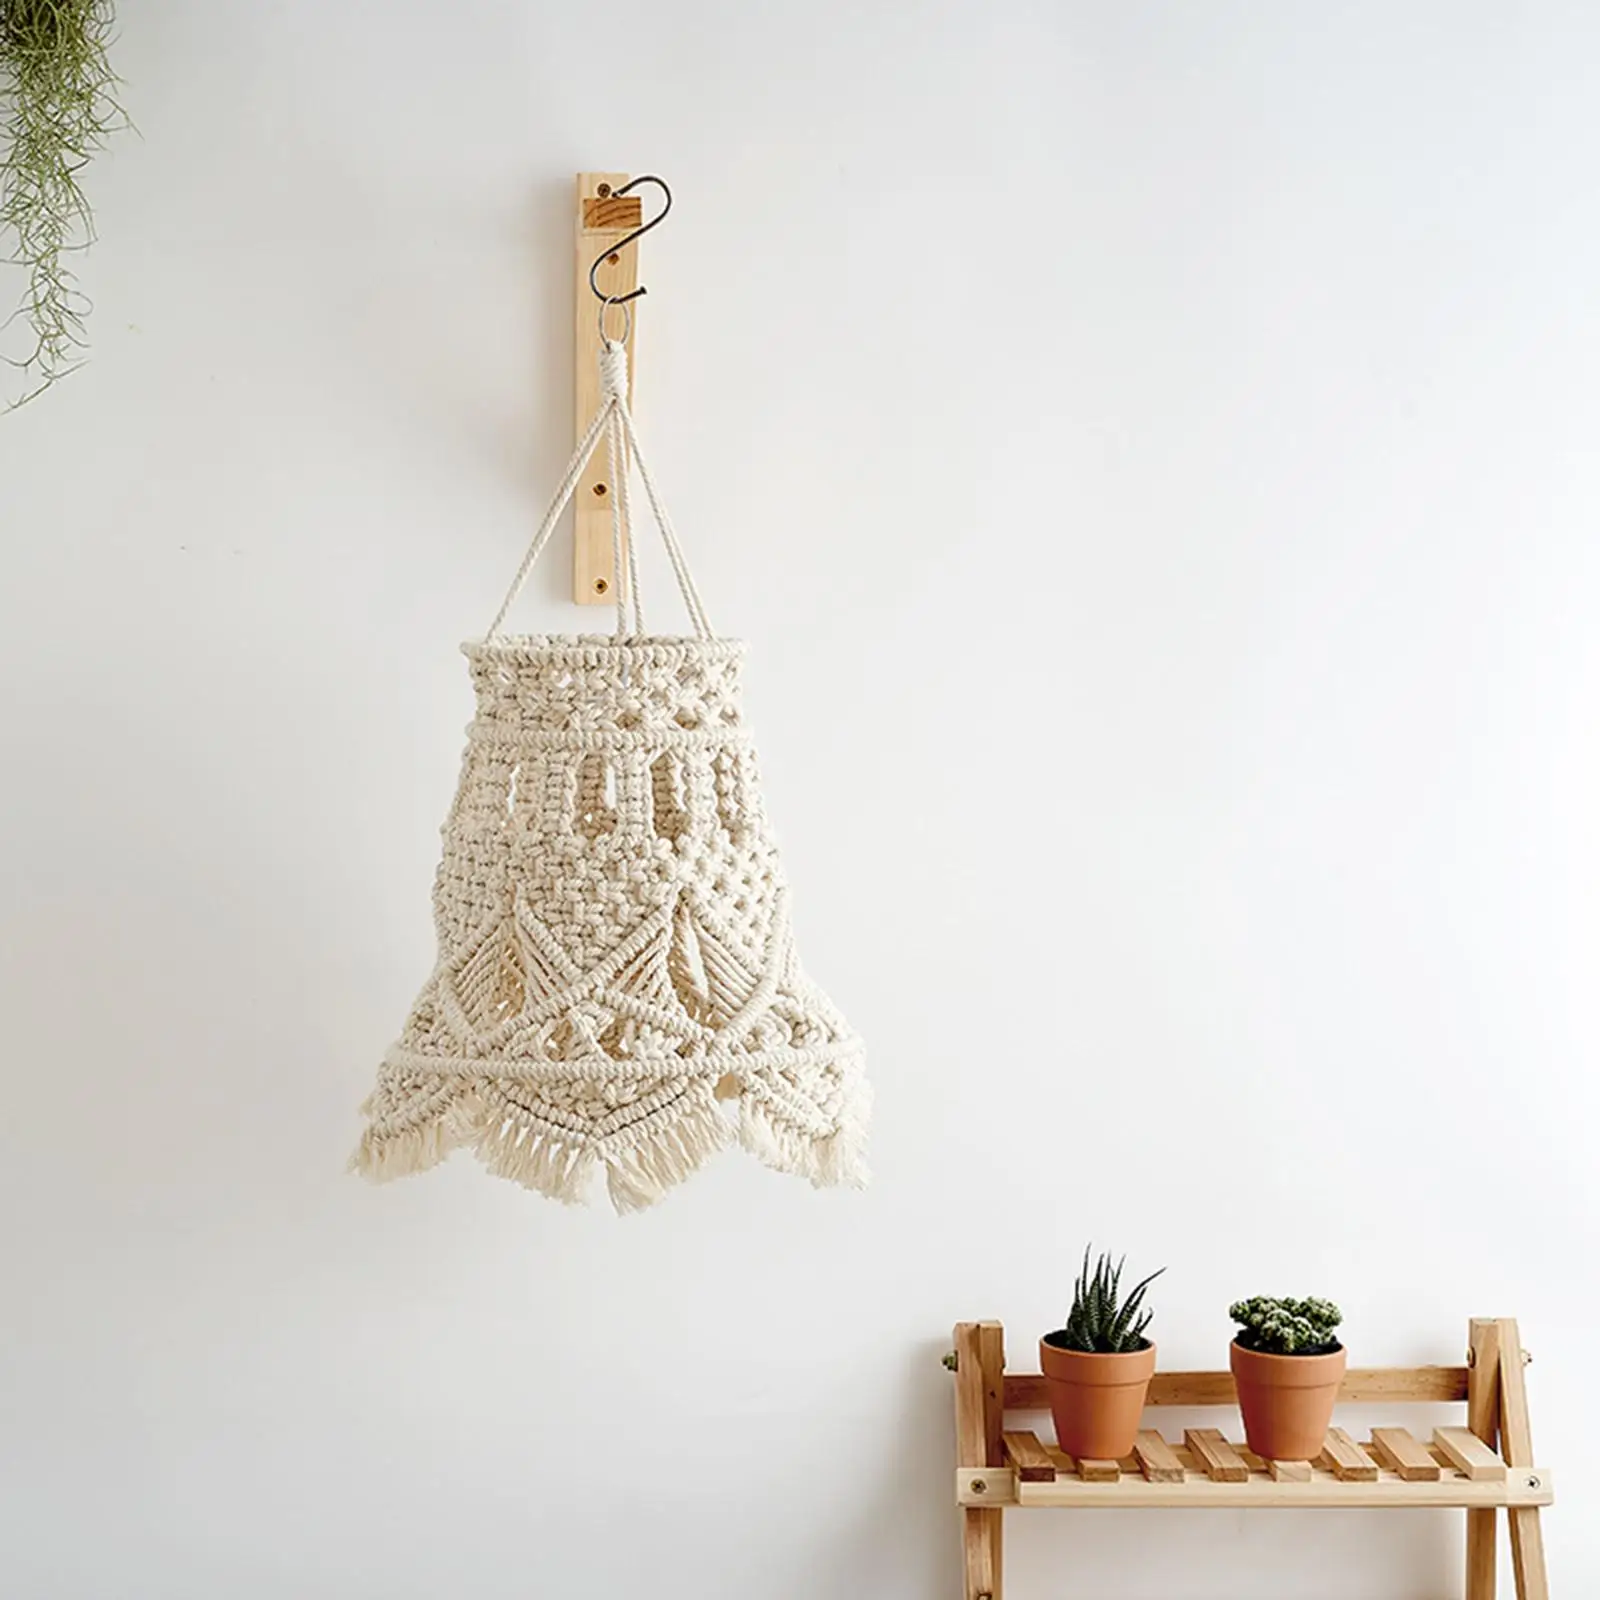 Macrame Tassel Lamp Shade Hand Woven Pendant Light Cover for Living Room